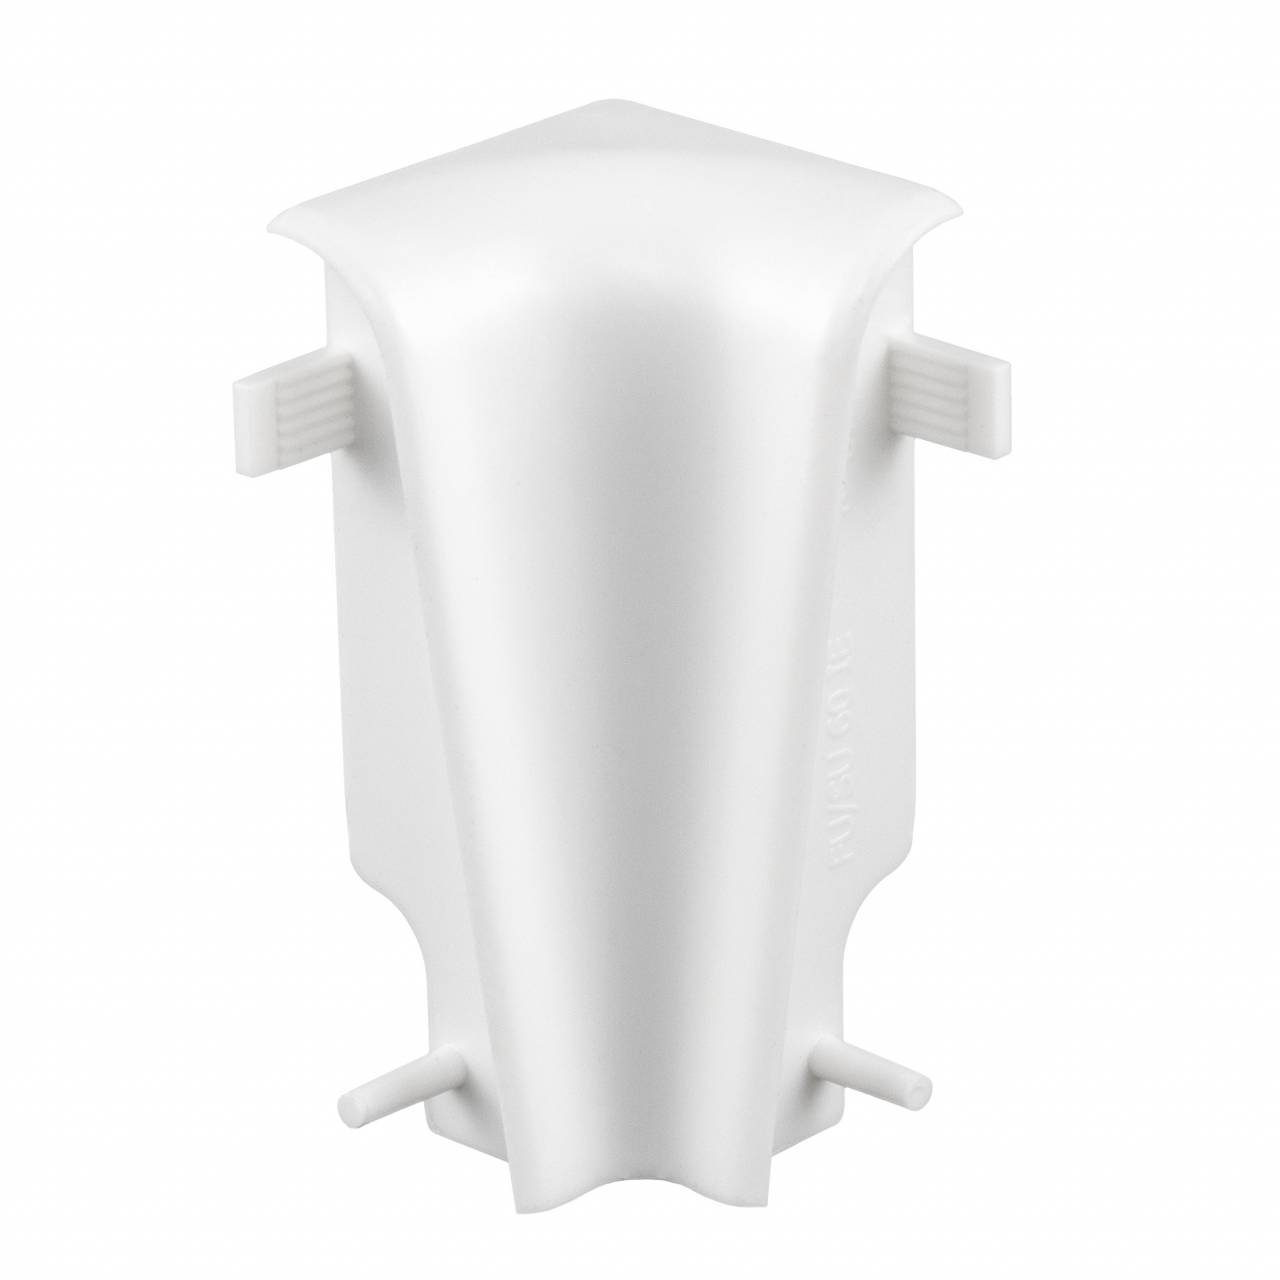 PROVISTON Sockelleisten-Innenecke Innenecken für MDF-Sockelleisten, 19 x 58 mm, Kunststoff, Weiß